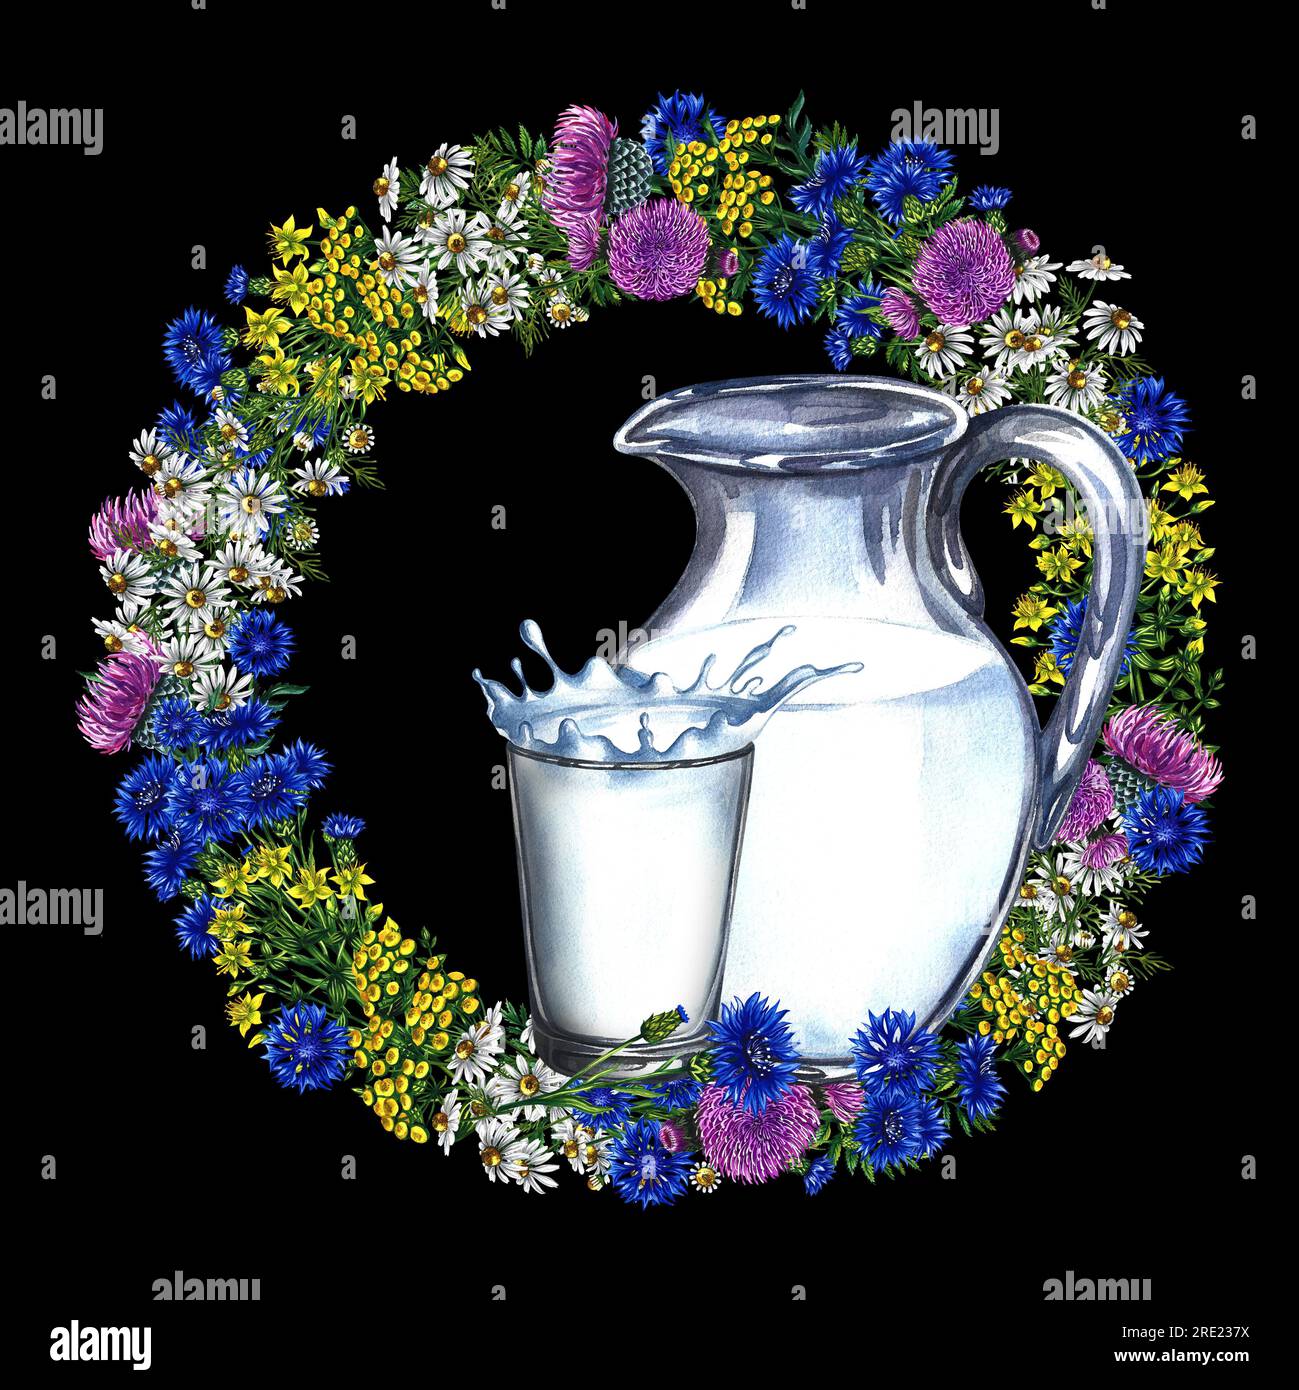 Carafe et un verre de lait. La composition est décorée d'une couronne de fleurs sauvages. Illustration à l'aquarelle dessinée à la main. Sur fond noir. Pour Banque D'Images